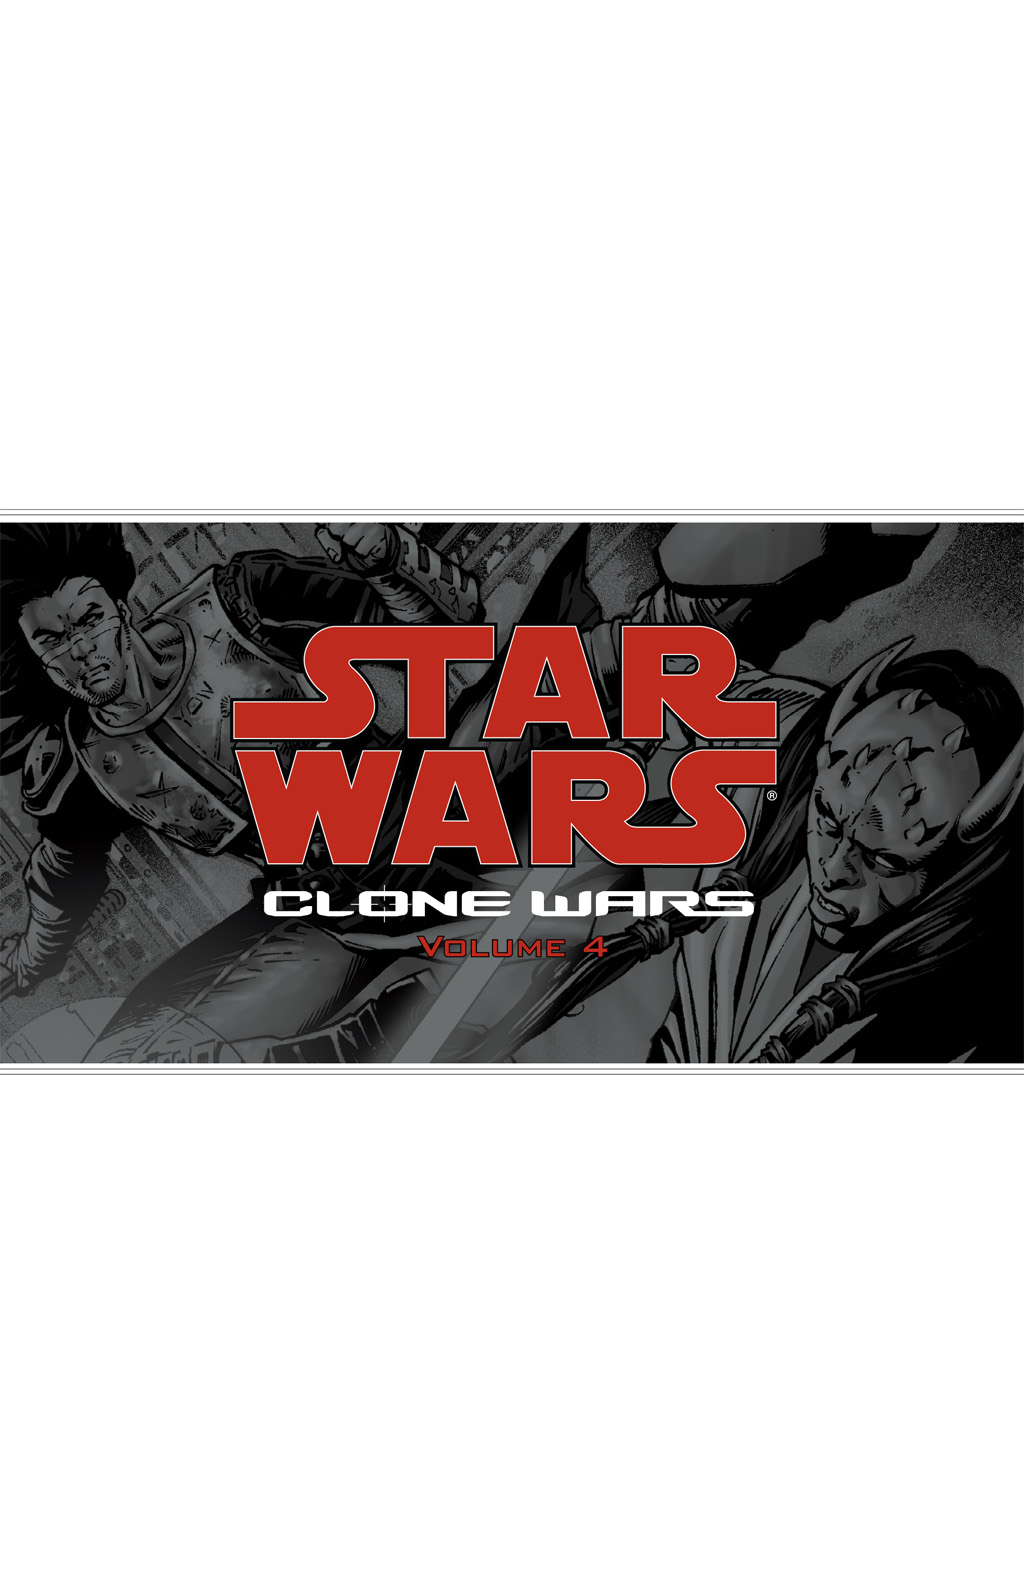 Read online Star Wars: Clone Wars comic -  Issue # TPB 4 - 2